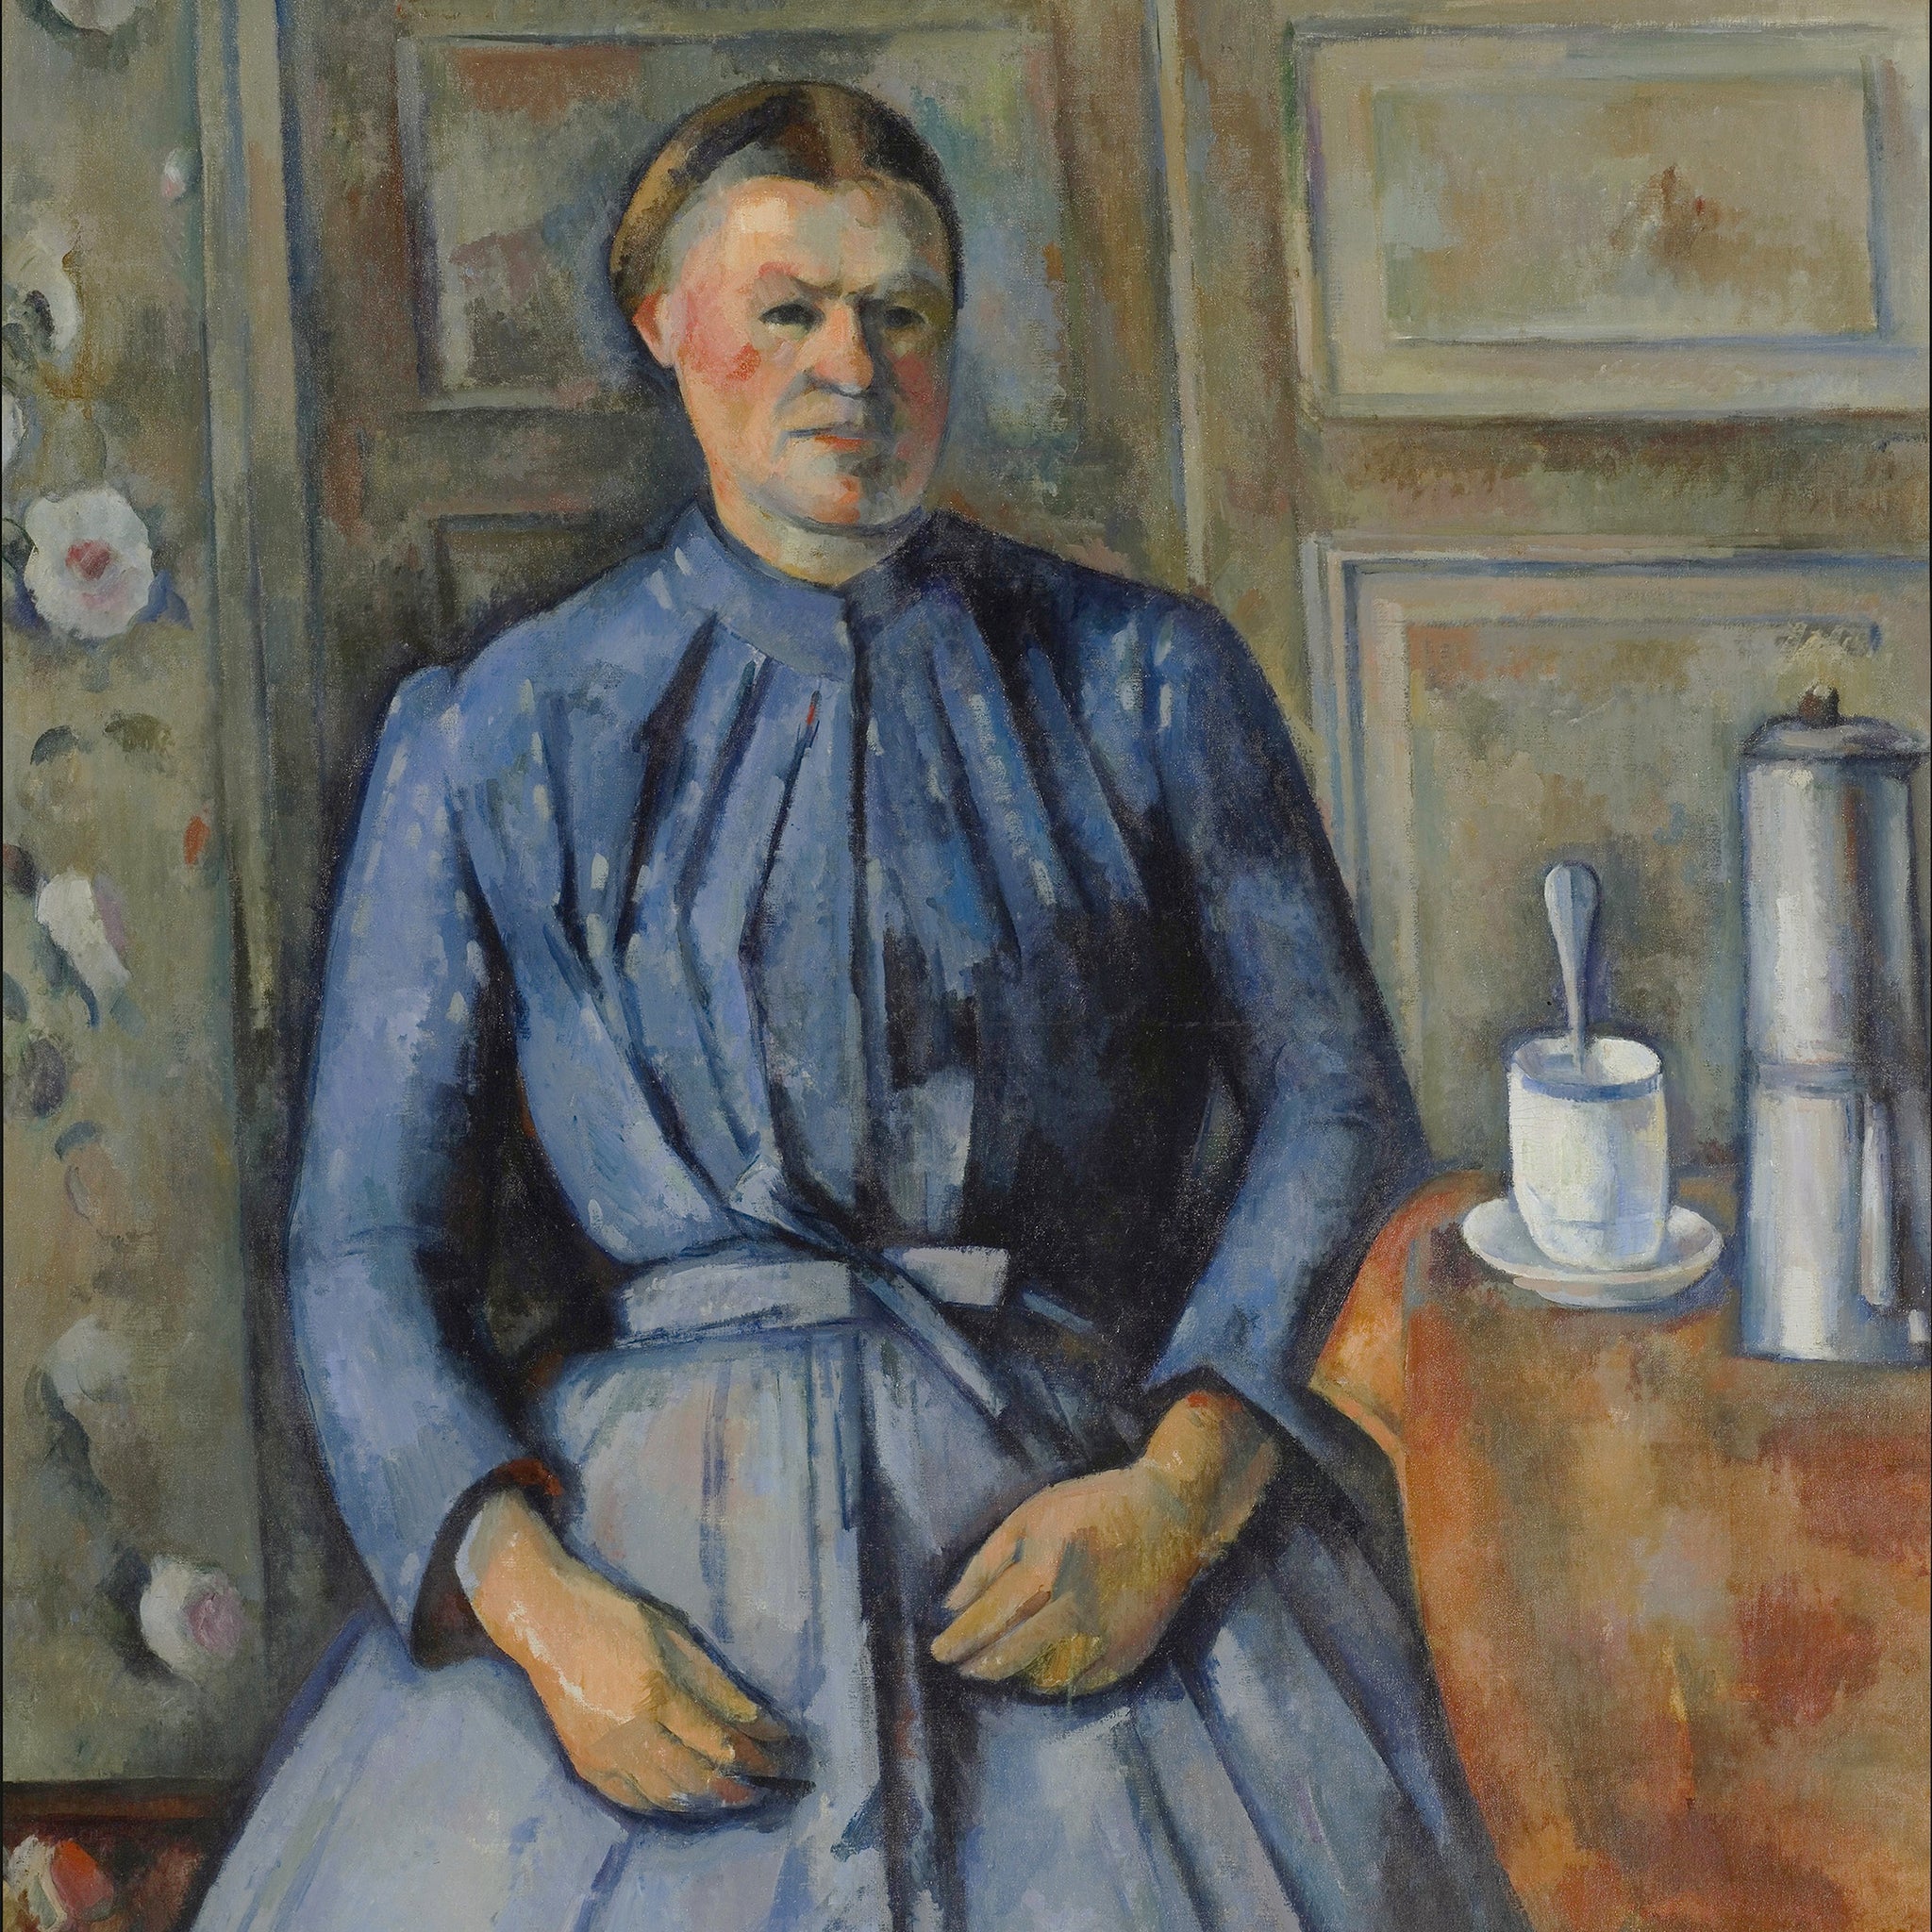 La femme à la cafetière - Paul Cézanne